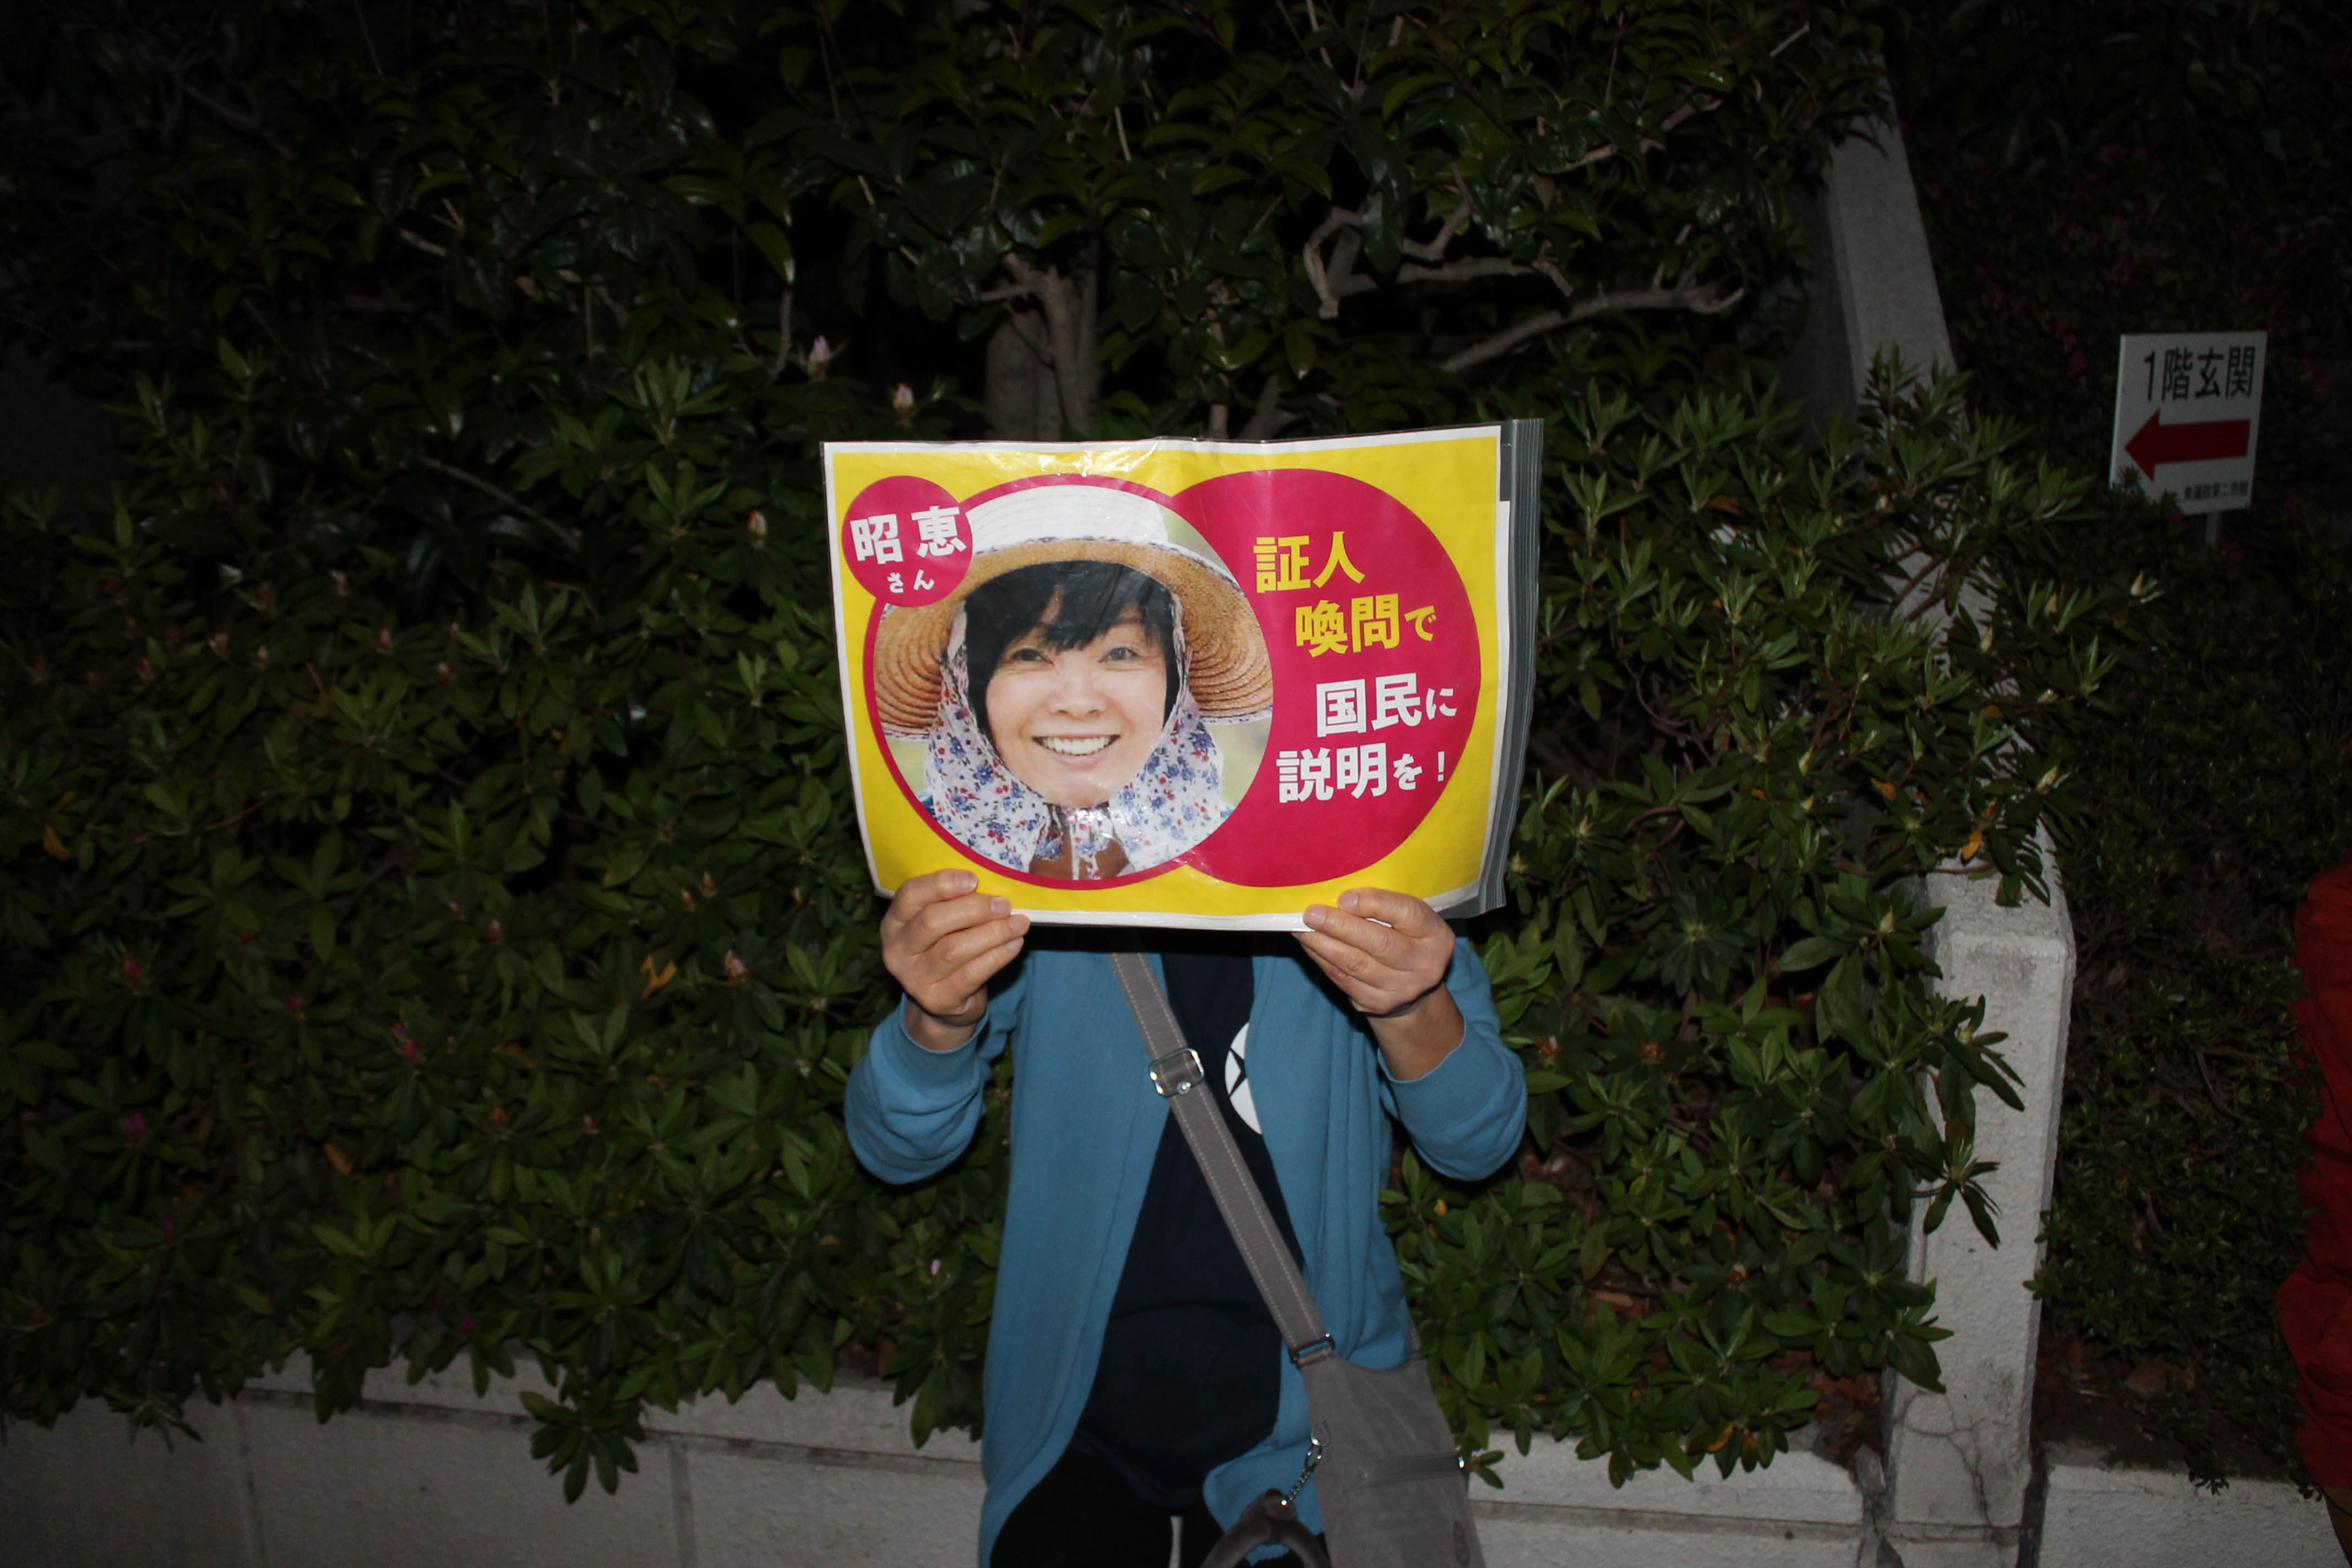 6일 저녁 도쿄 치요다구 일본 총리 관저 앞 시위에서 한 참가자가 아베 총리 부인 아키에씨의 국회 증인 소환을 요구하는 손팻말을 들고 있다.